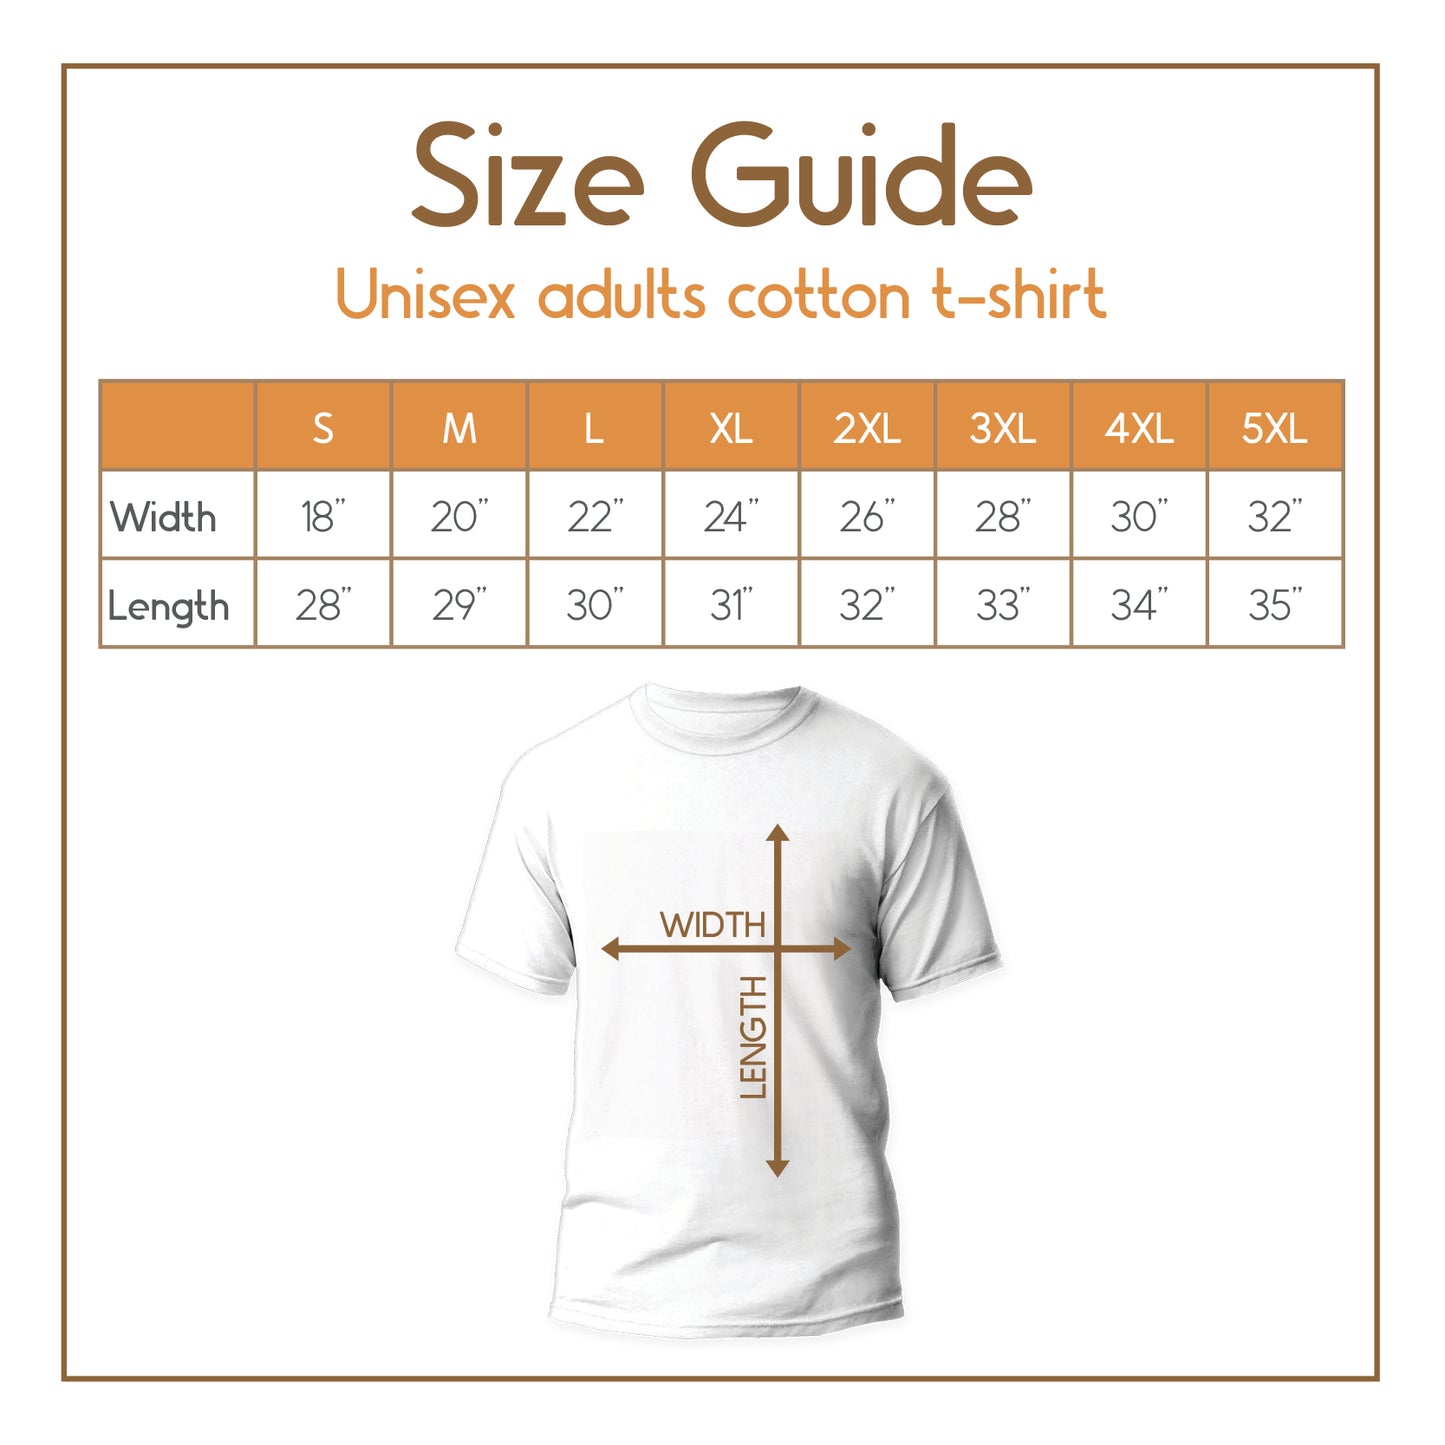 Chihuahua t-shirt size guide